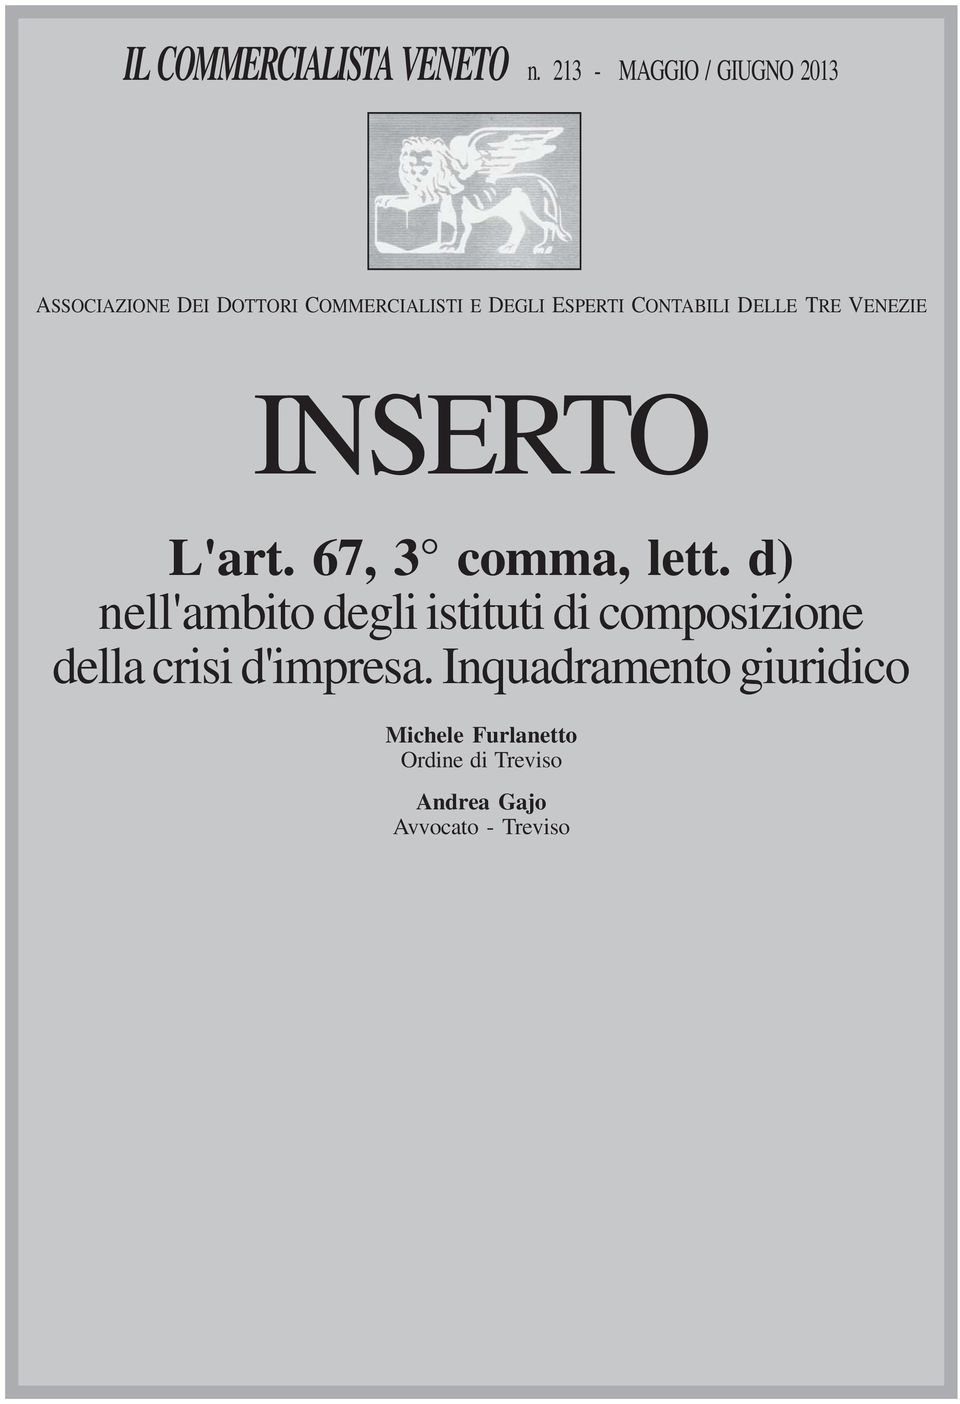 CONTABILI DELLE TRE VENEZIE INSERTO L'art. 67, 3 comma, lett.